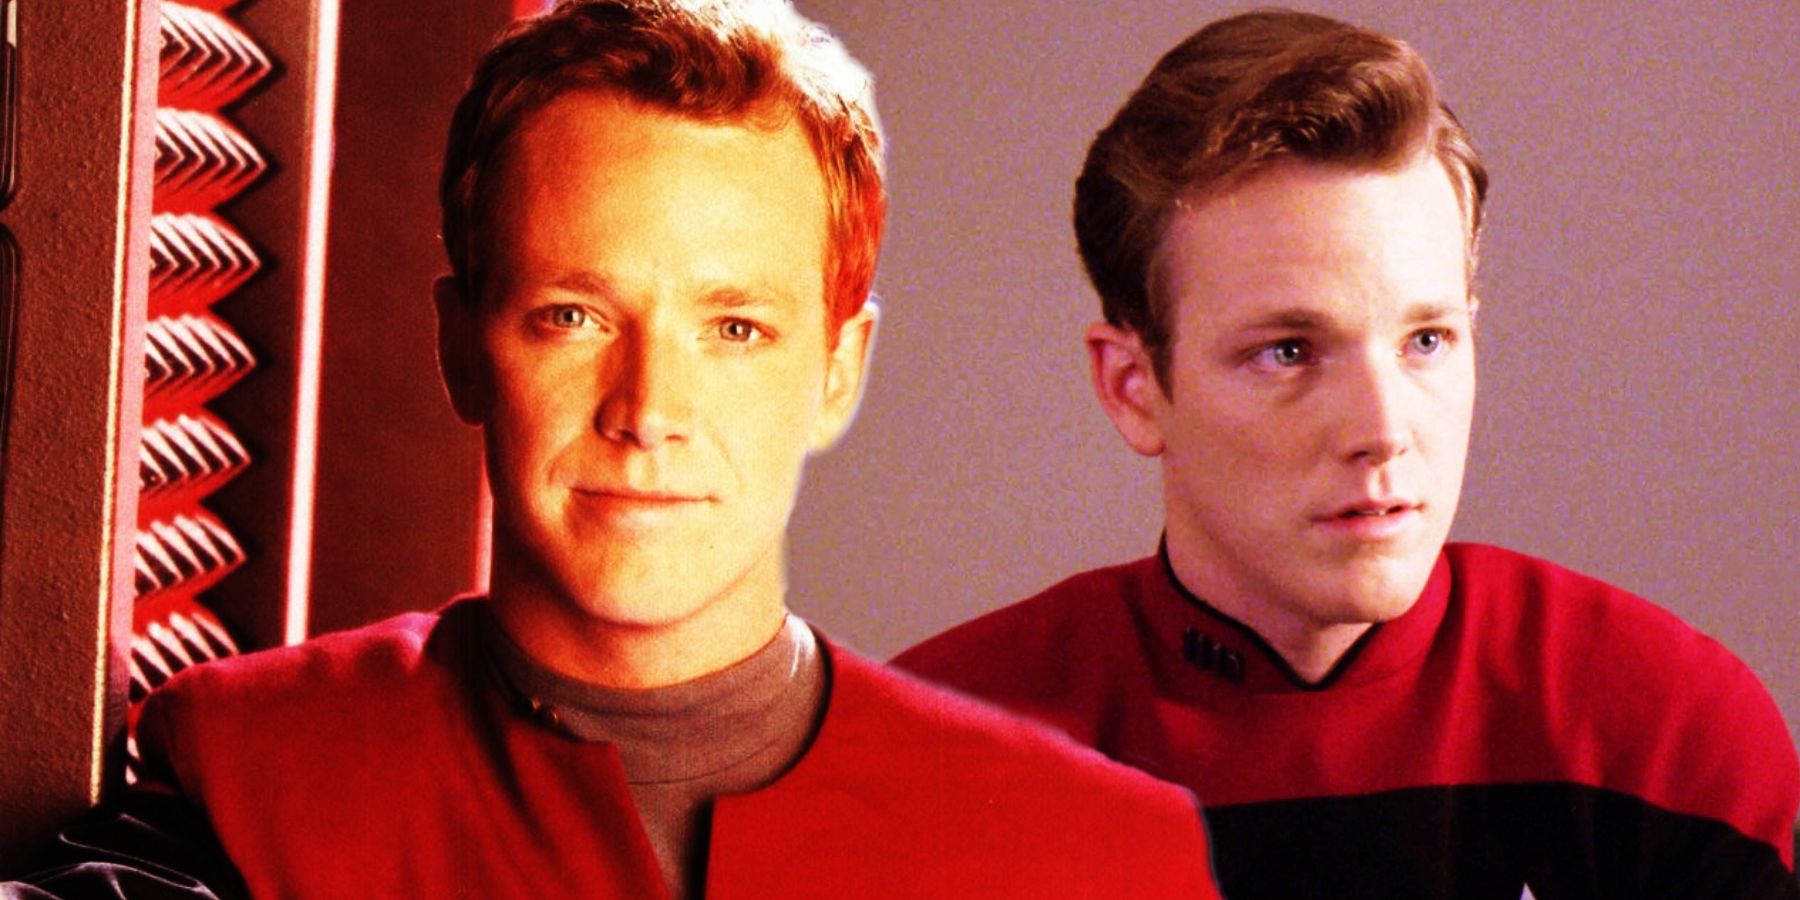 “Polar opuestos”: Robert Duncan McNeill compara sus dos personajes de Star Trek